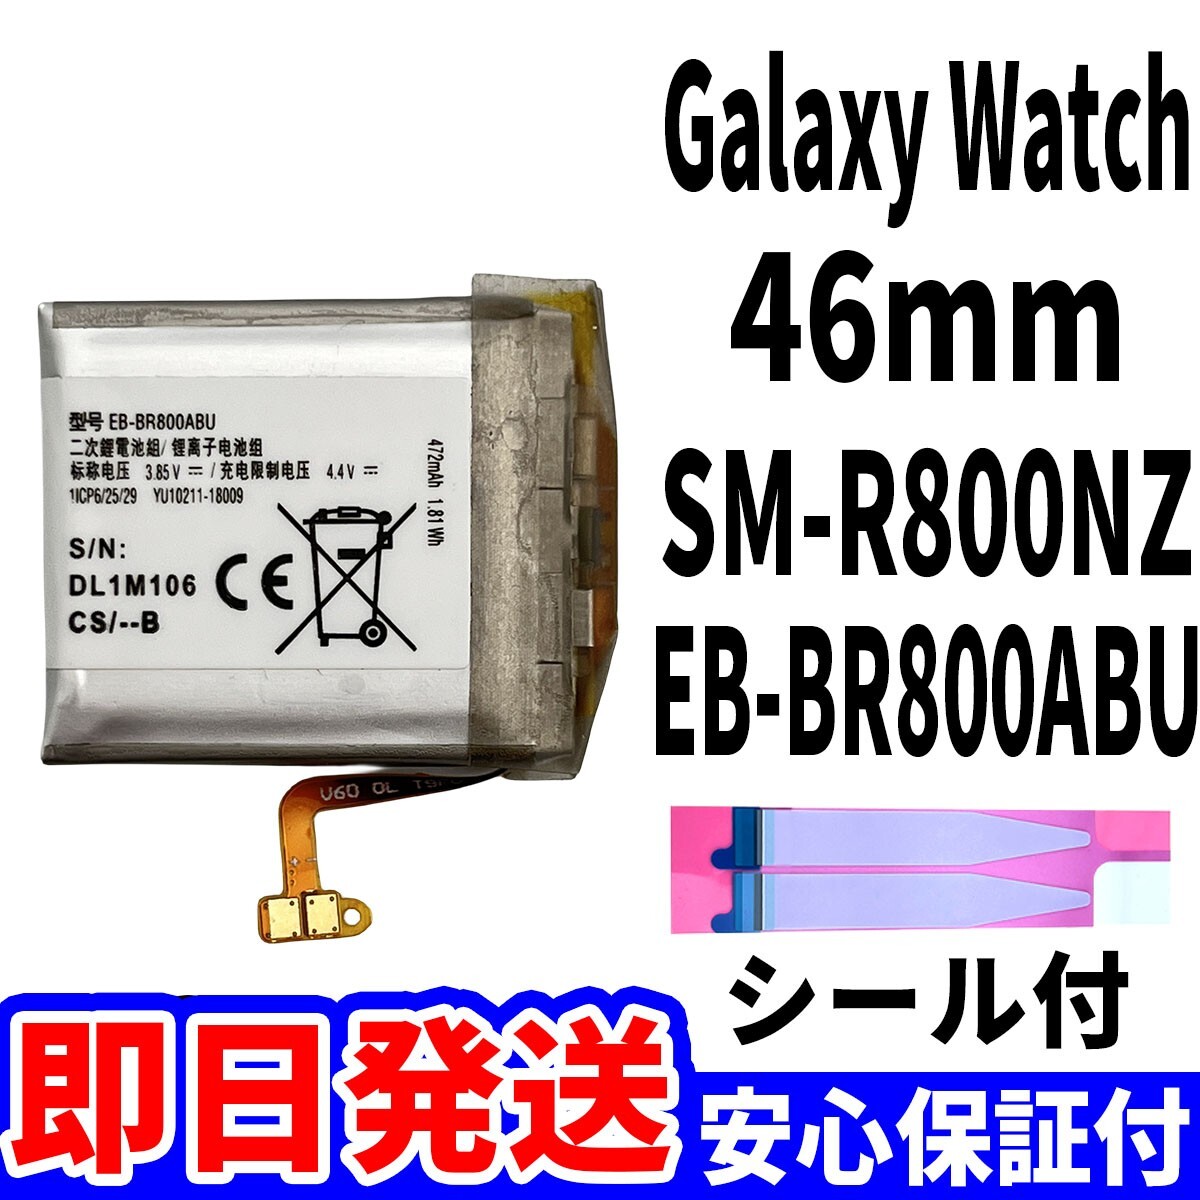  внутри страны  в тот же день   отправка   оригинальный  равенство   новый товар  Galaxy Watch 46mm  батарея   EB-BR800ABU SM-R800NZ  аккумулятор   замена   встроенный  battery  ремонт   единый элемент    инструменты  нет  